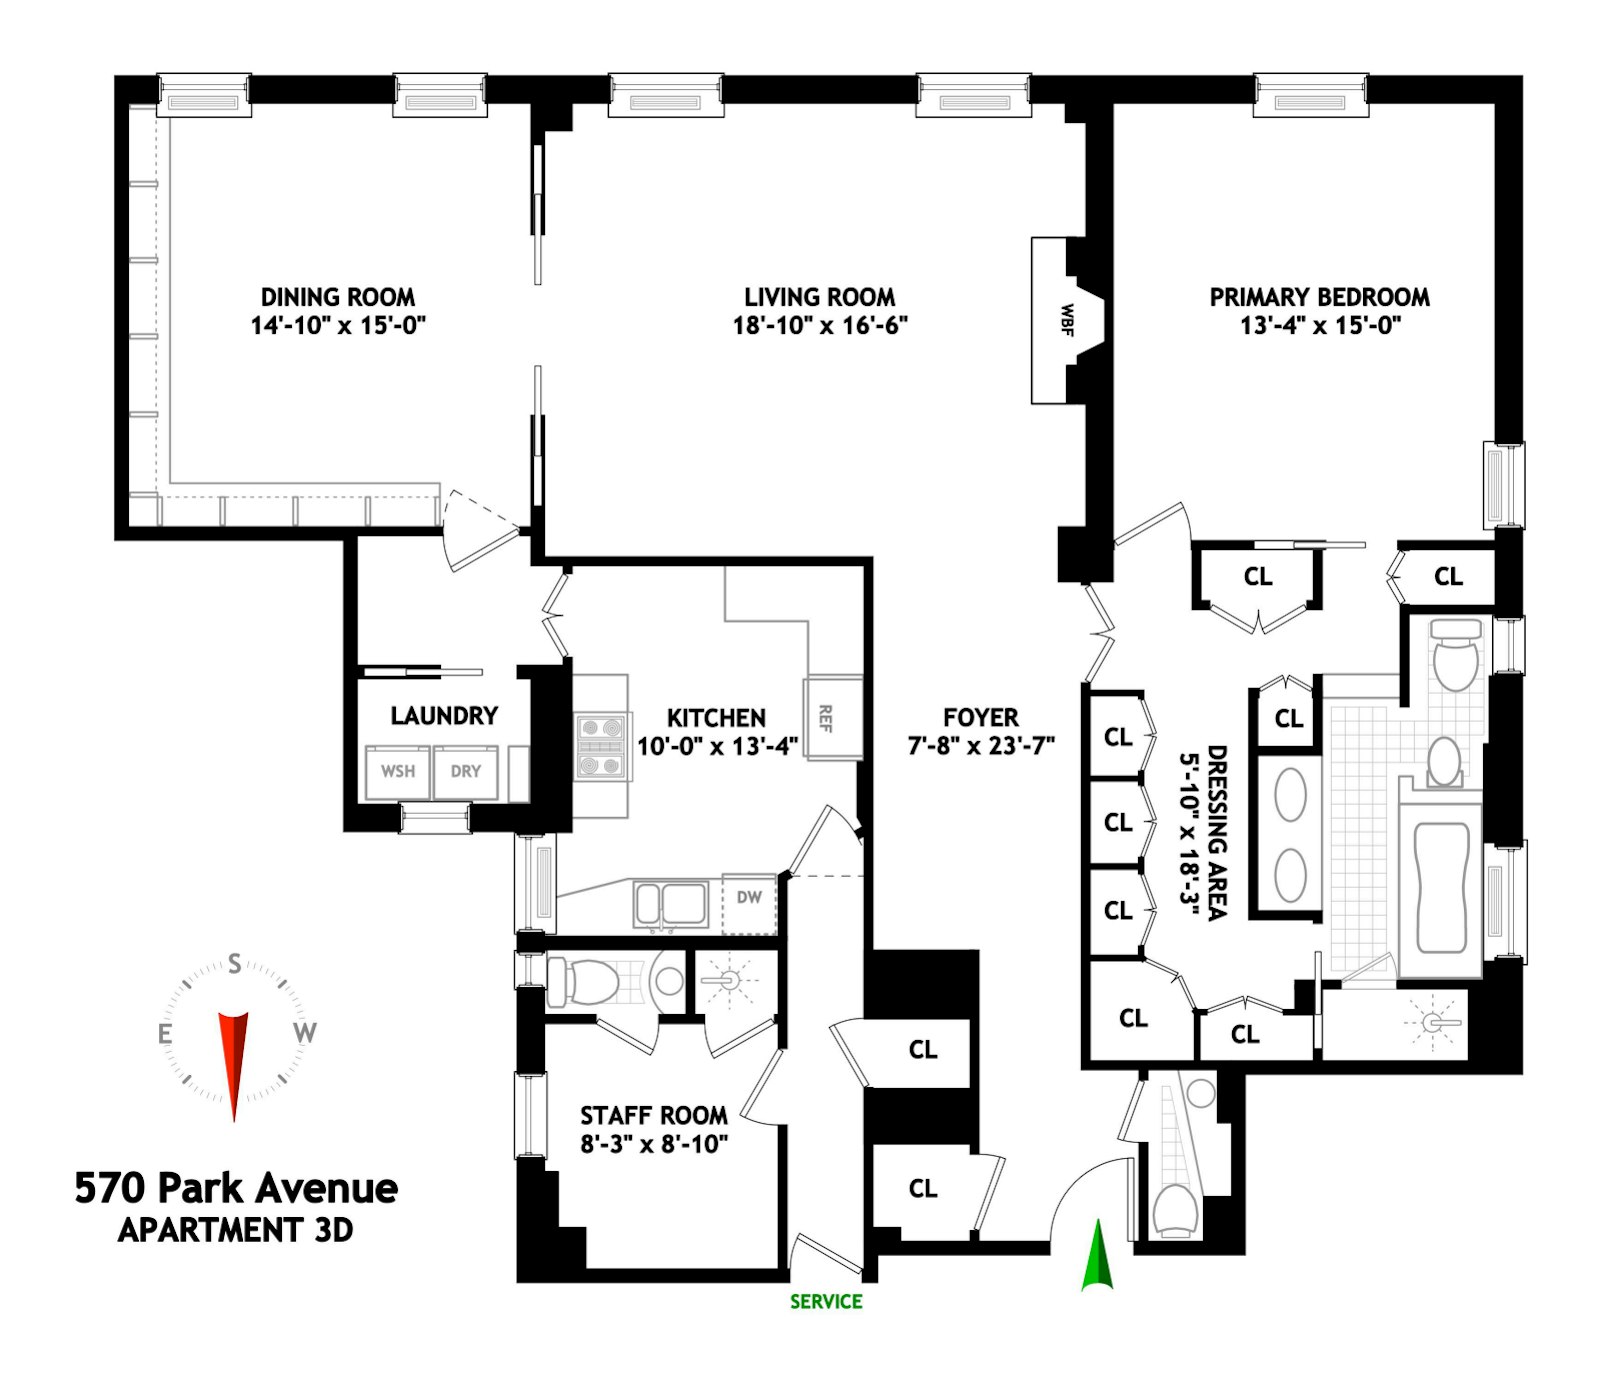 Floorplan for 570 Park Avenue, 3D